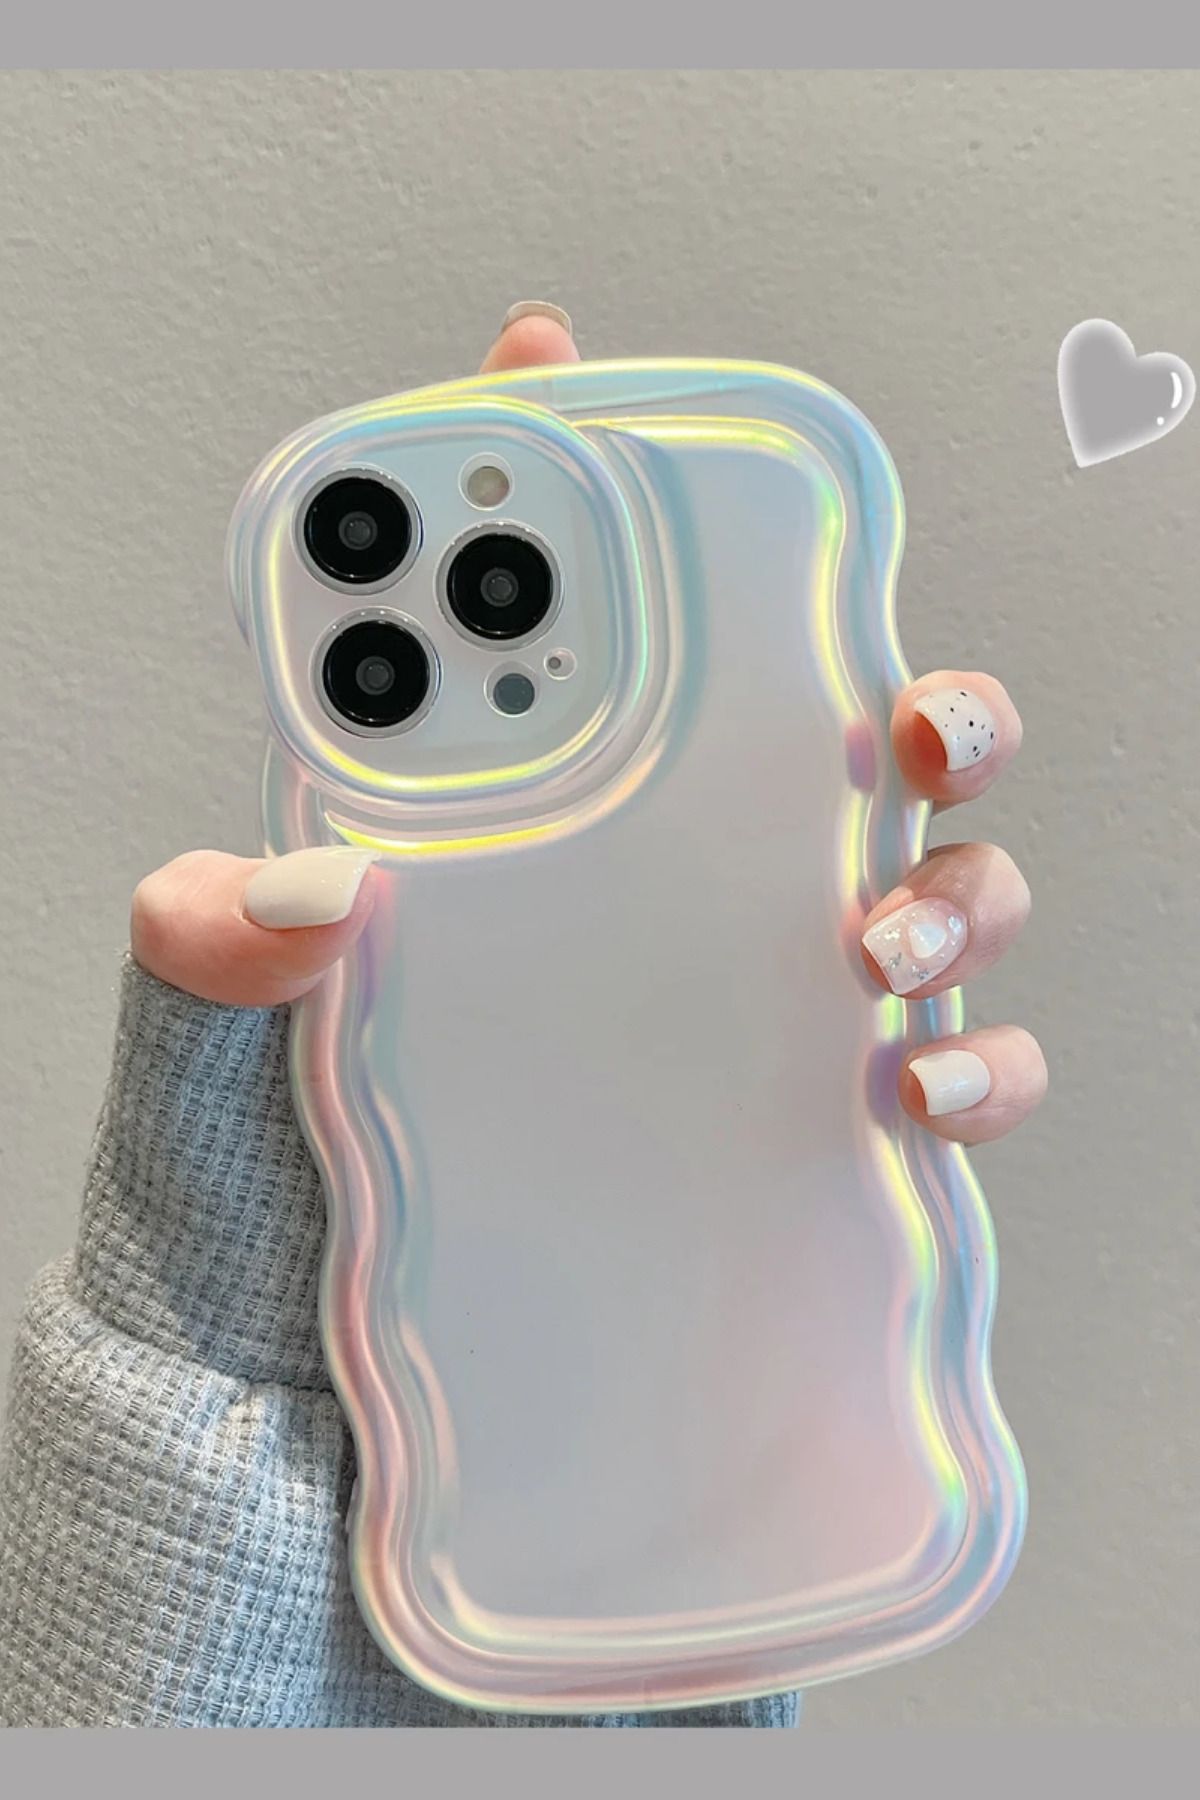 KVK PRİVACY Iphone 12 Promax Kılıf Hologram Kıvrımlı Renk Geçişli Mat Darbelere Karşı Dayanıklı Yumuşak Kapak